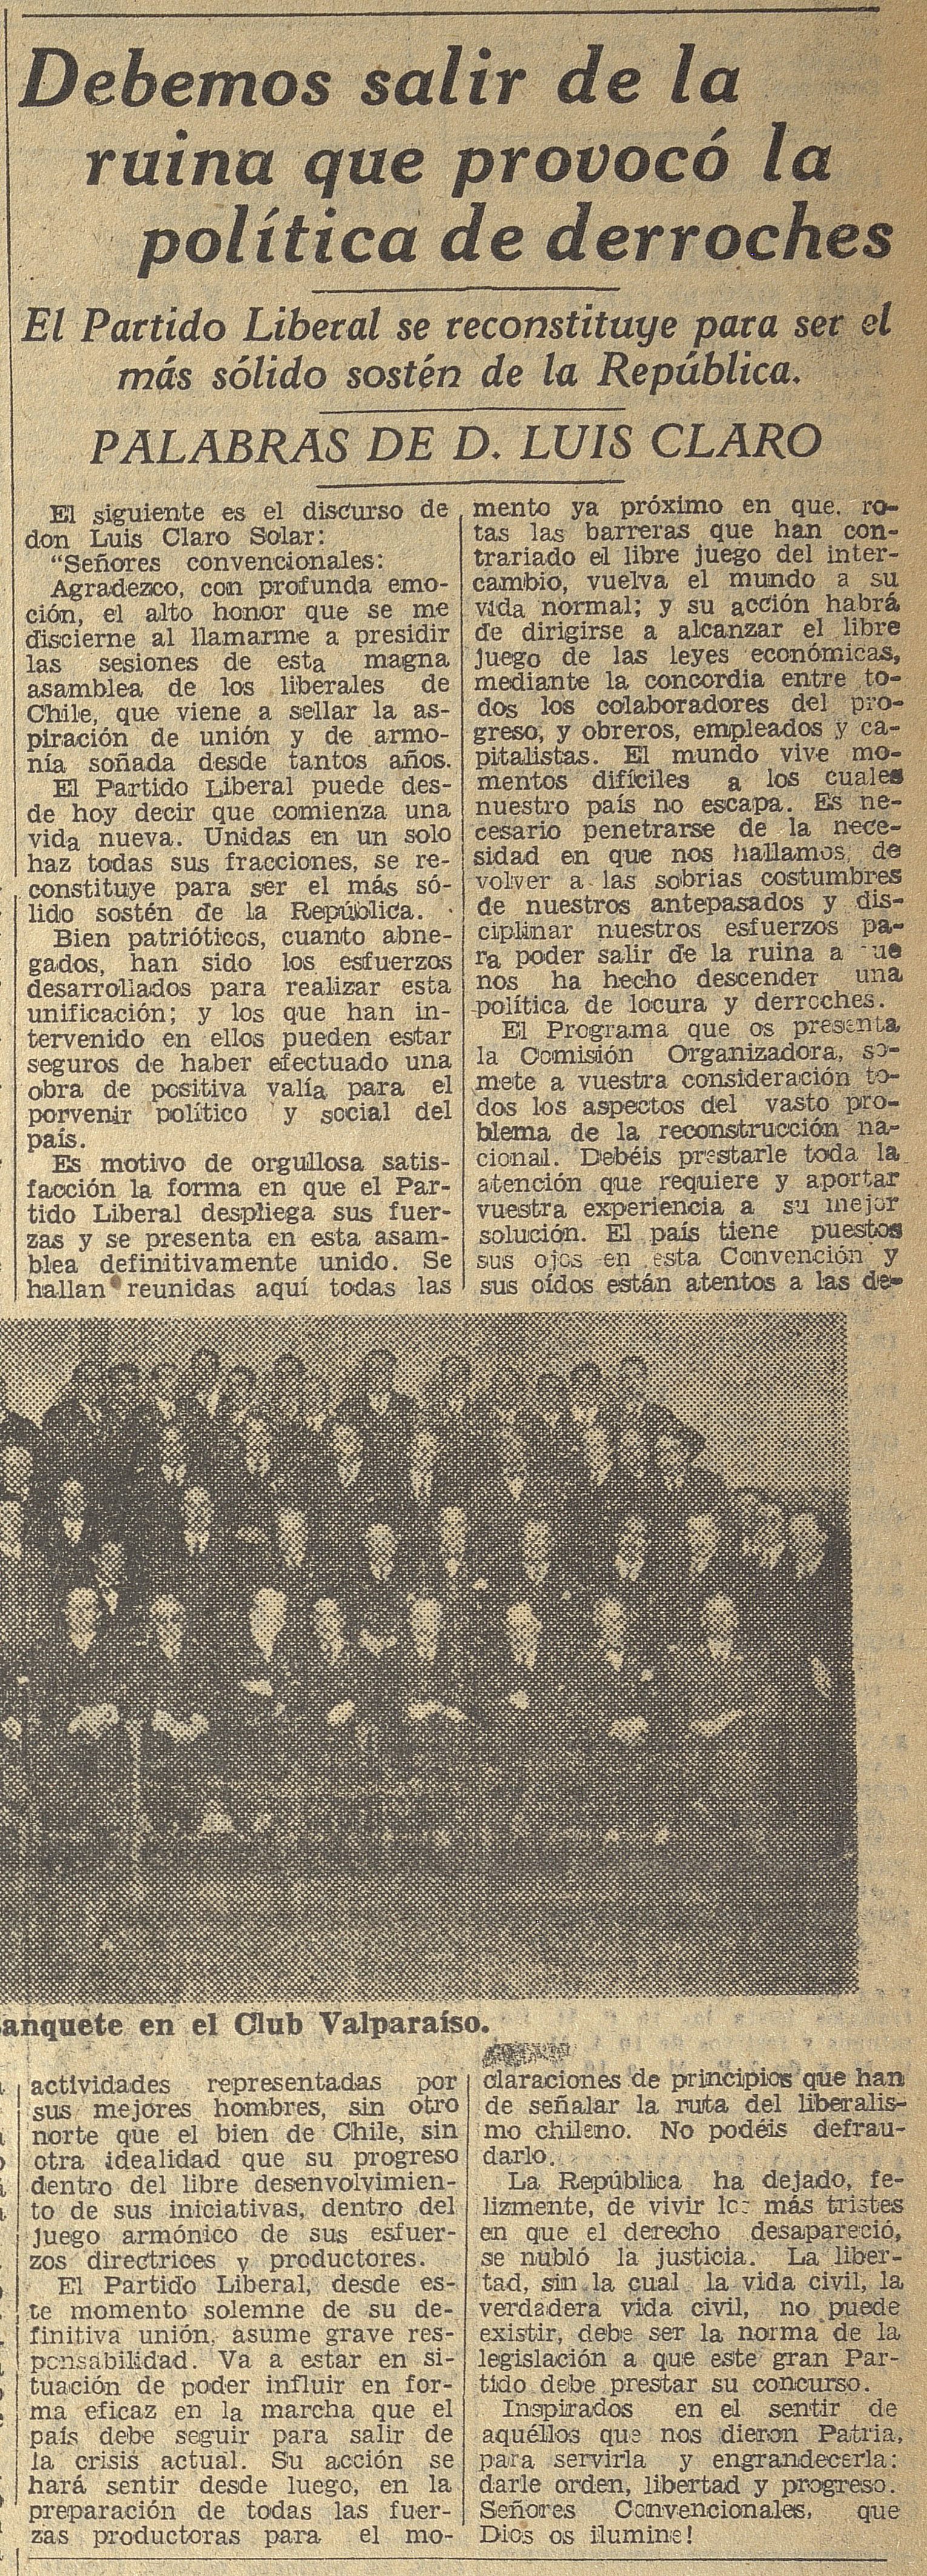 Claro, Luis D, "Debemos salir de la rutina que provocó la política de derroches", Diario El Mercurio, Santiago, viernes 13 de octubre de 1933. Portada